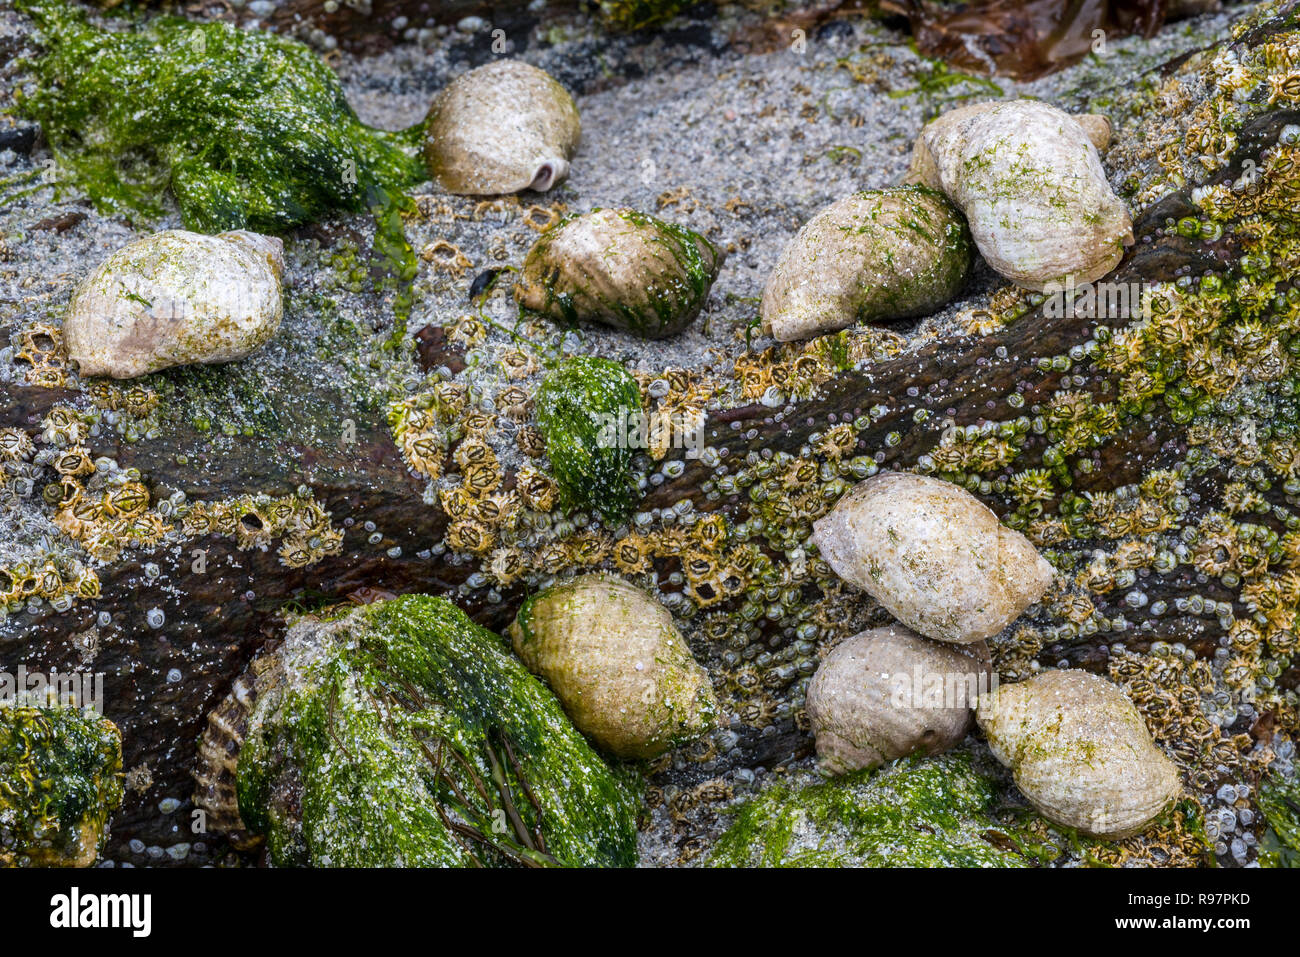 Hund Wellhornschnecken/dogwhelks, Atlantic dogwinkles (Nucella lapillus/Buccinum filosa) Fütterung mit Seepocken auf Felsen in der Gezeiten rockpool Stockfoto